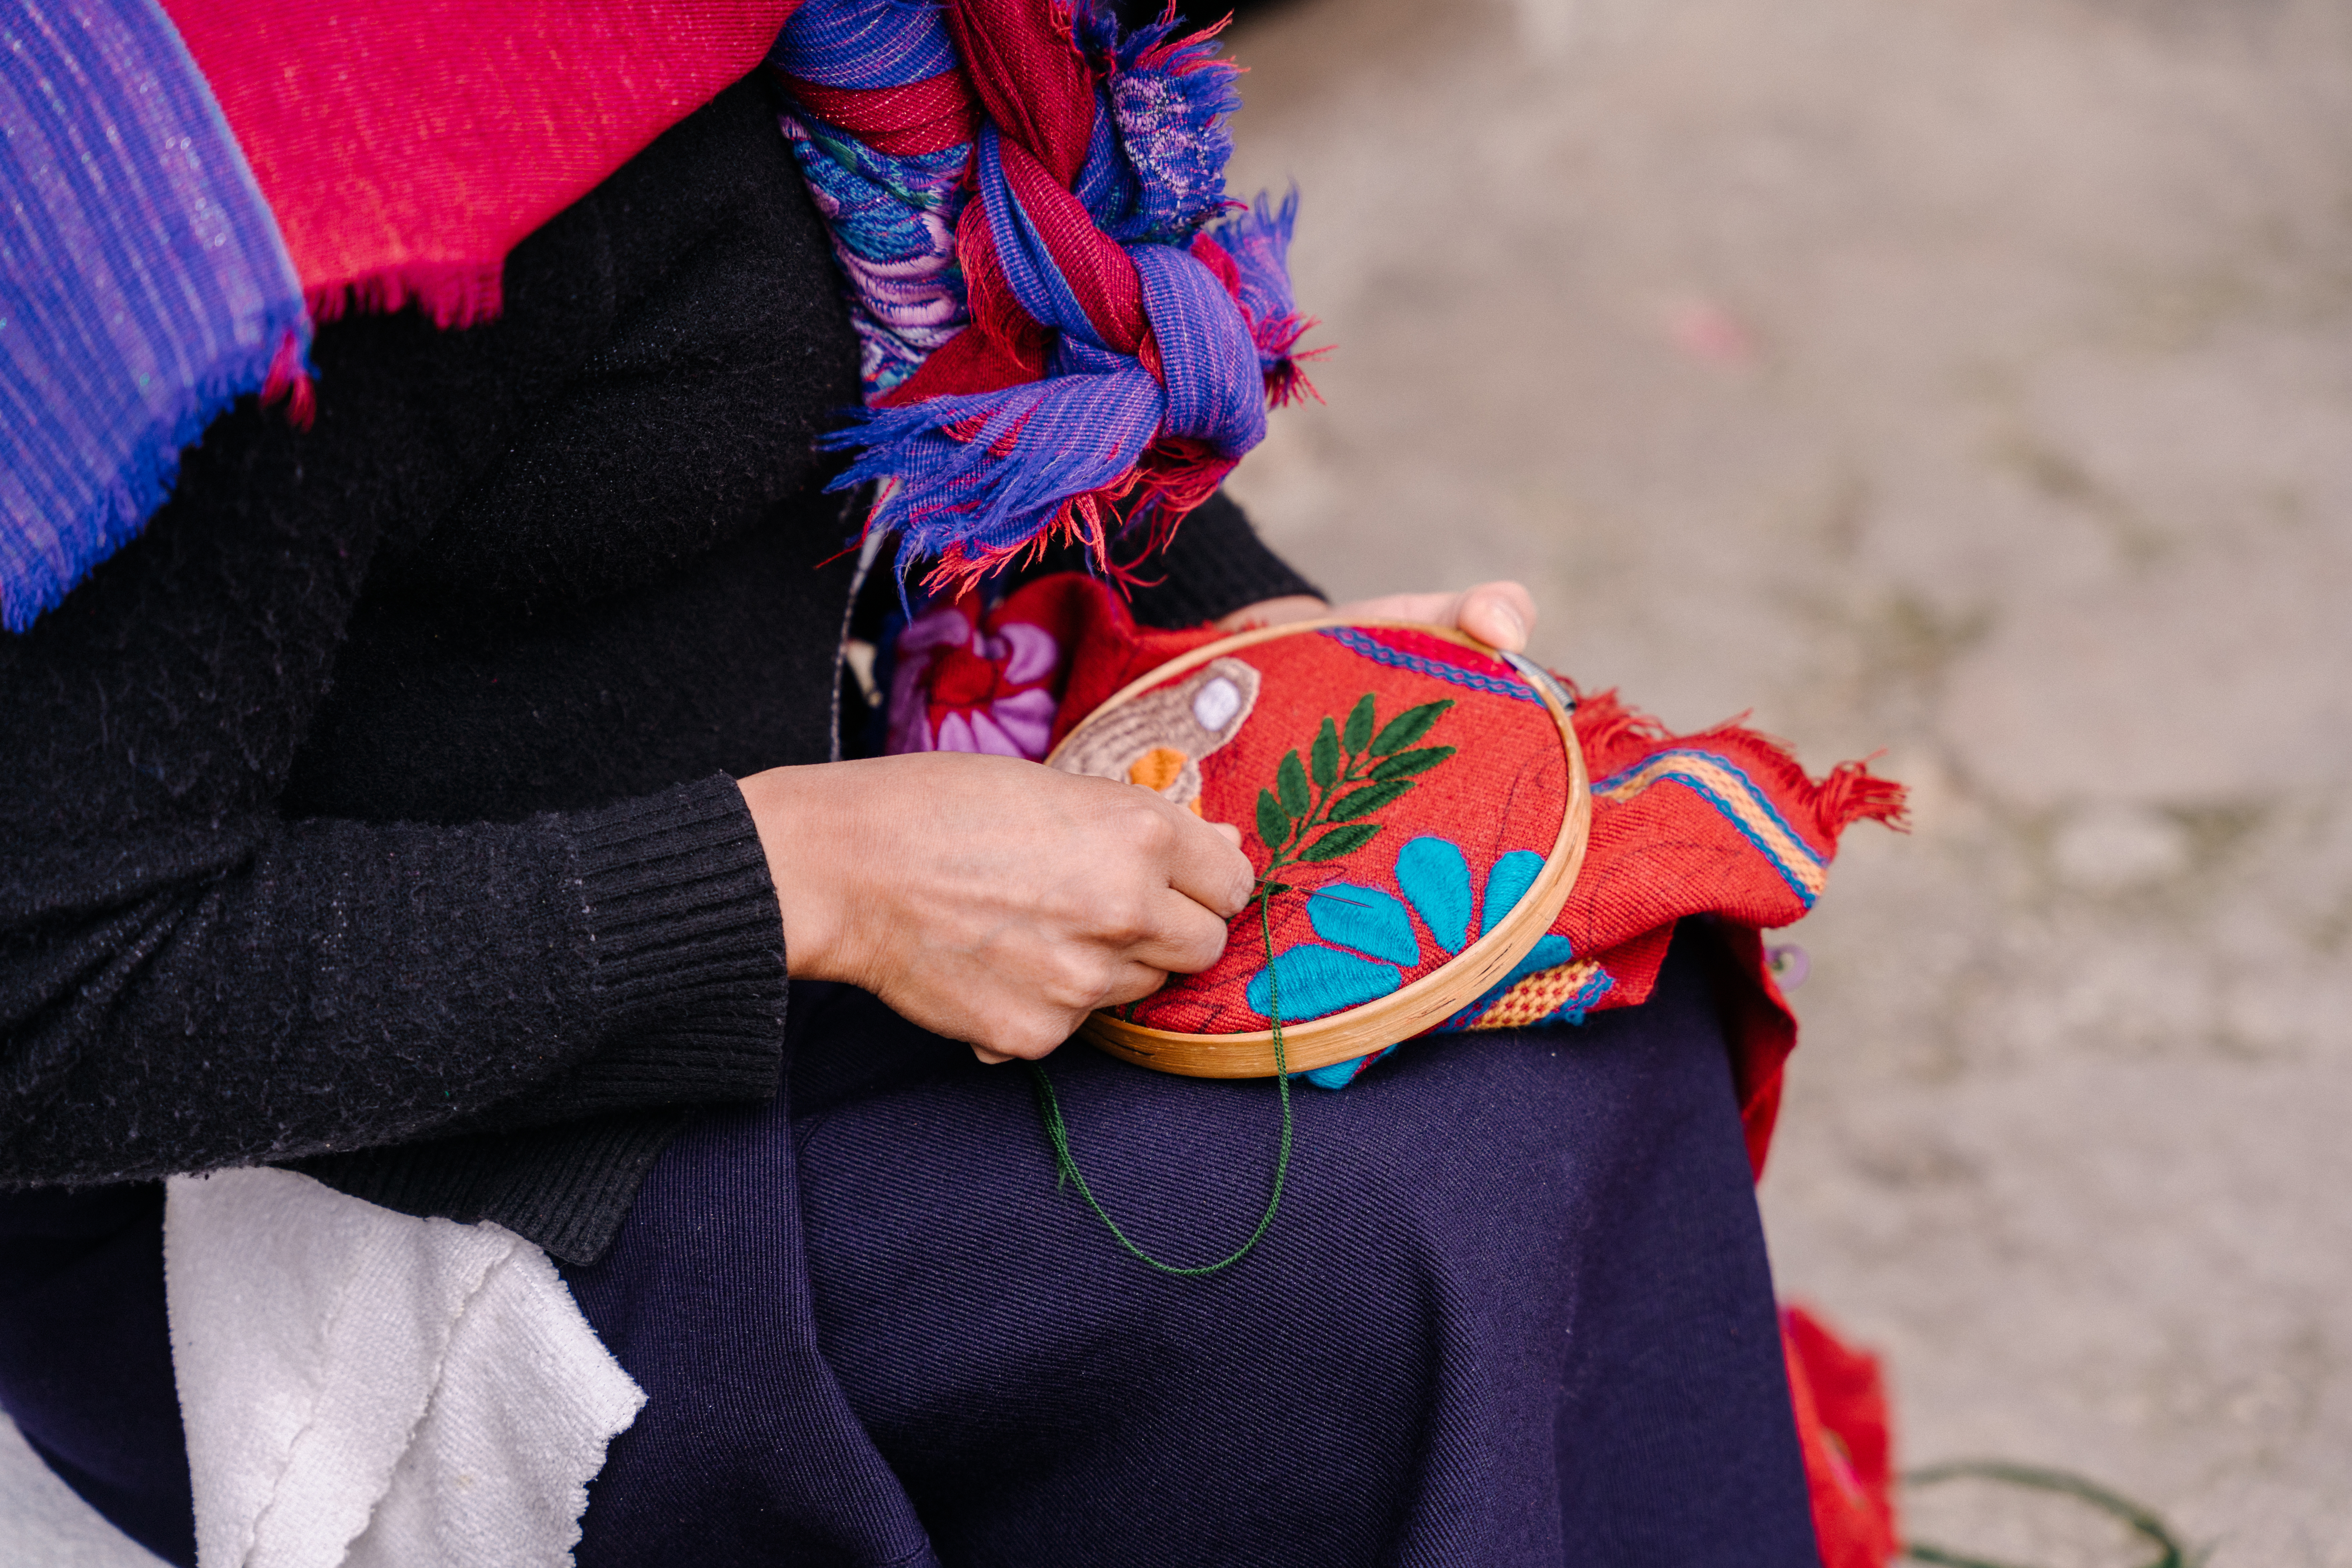 Vista cercana de una mujer bordando motivos florales en un textil granate.